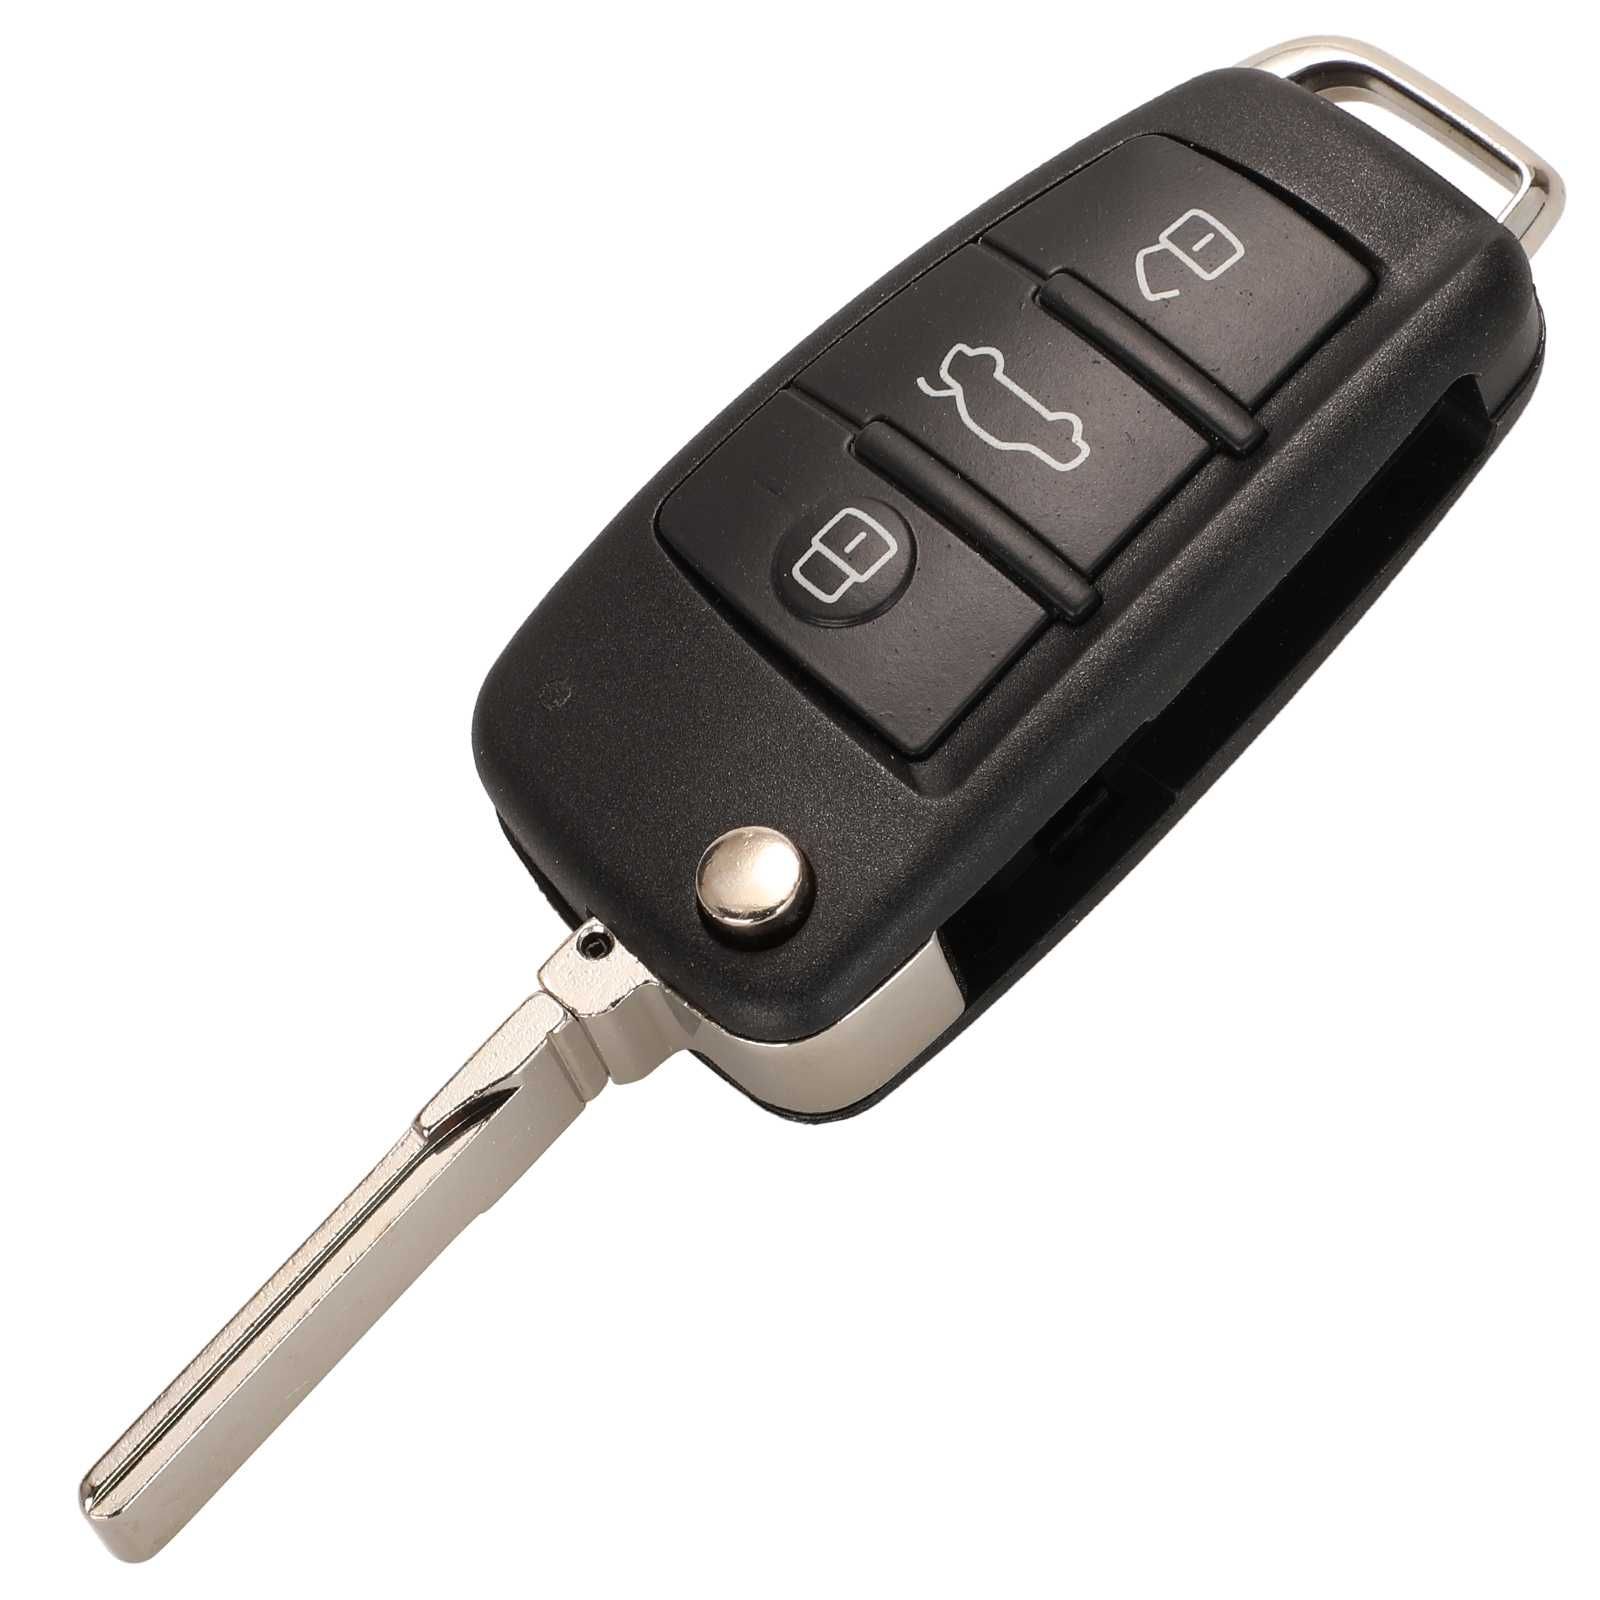 Автомобилен ключ с 3 бутона за Audi (A6/Q7) комплект (868 MHz)!